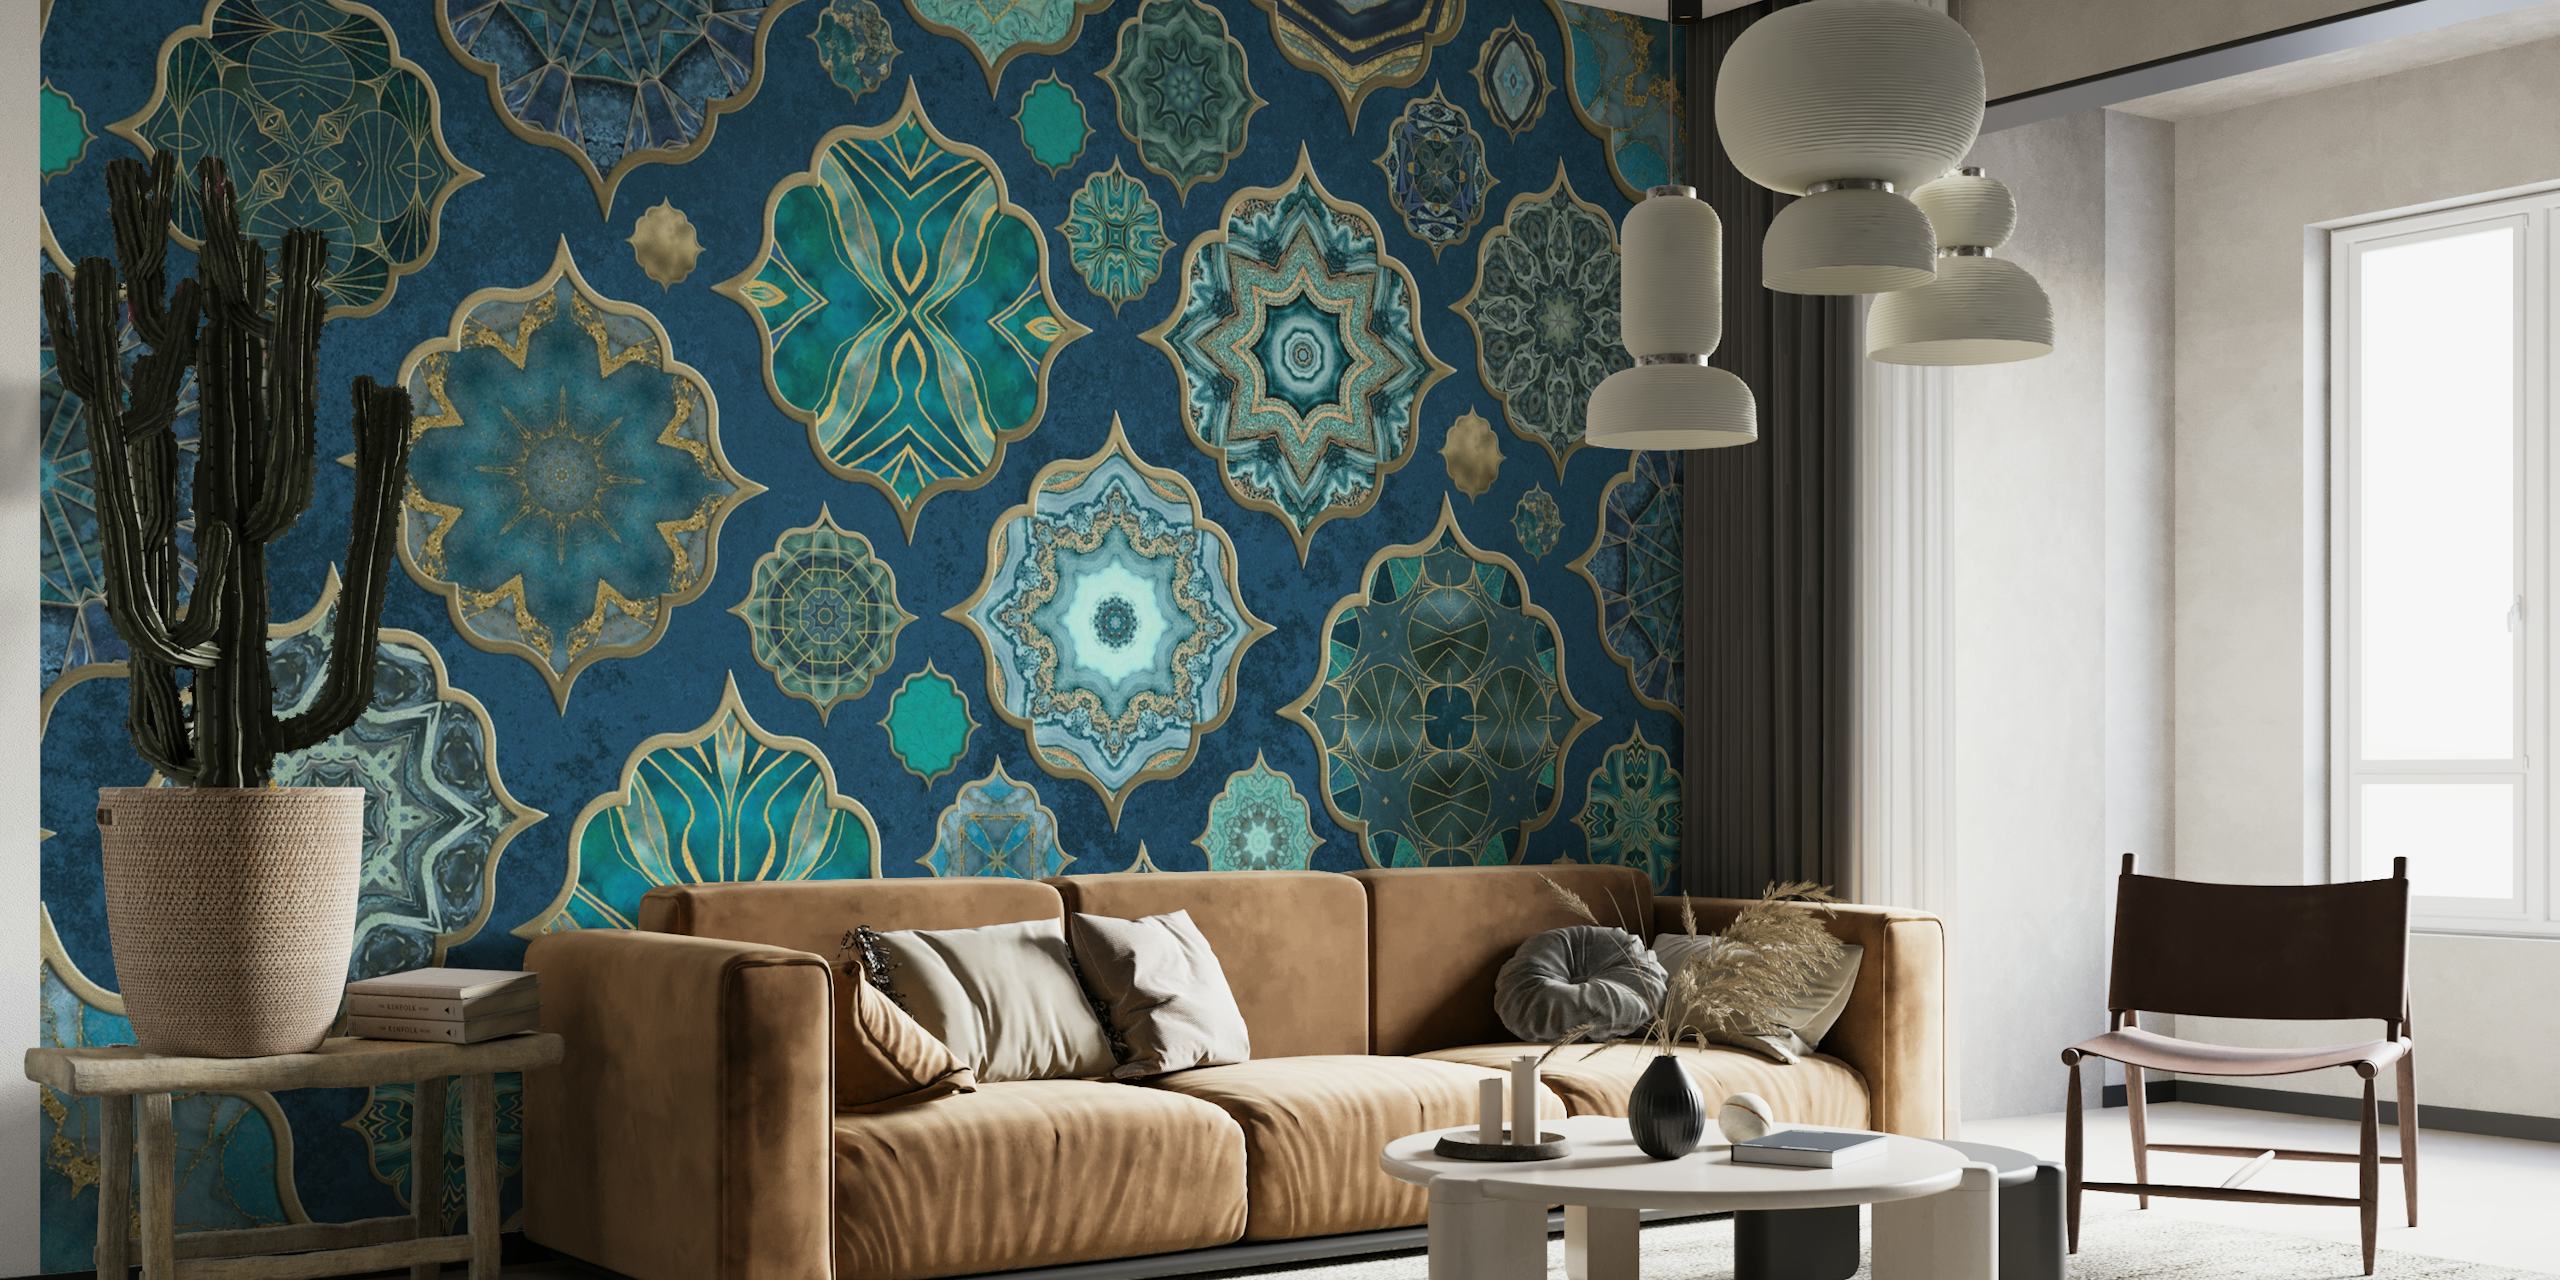 Vægmaleri med flisemønster i marokkansk stil i nuancer af blågrøn og marineblå med guldaccenter